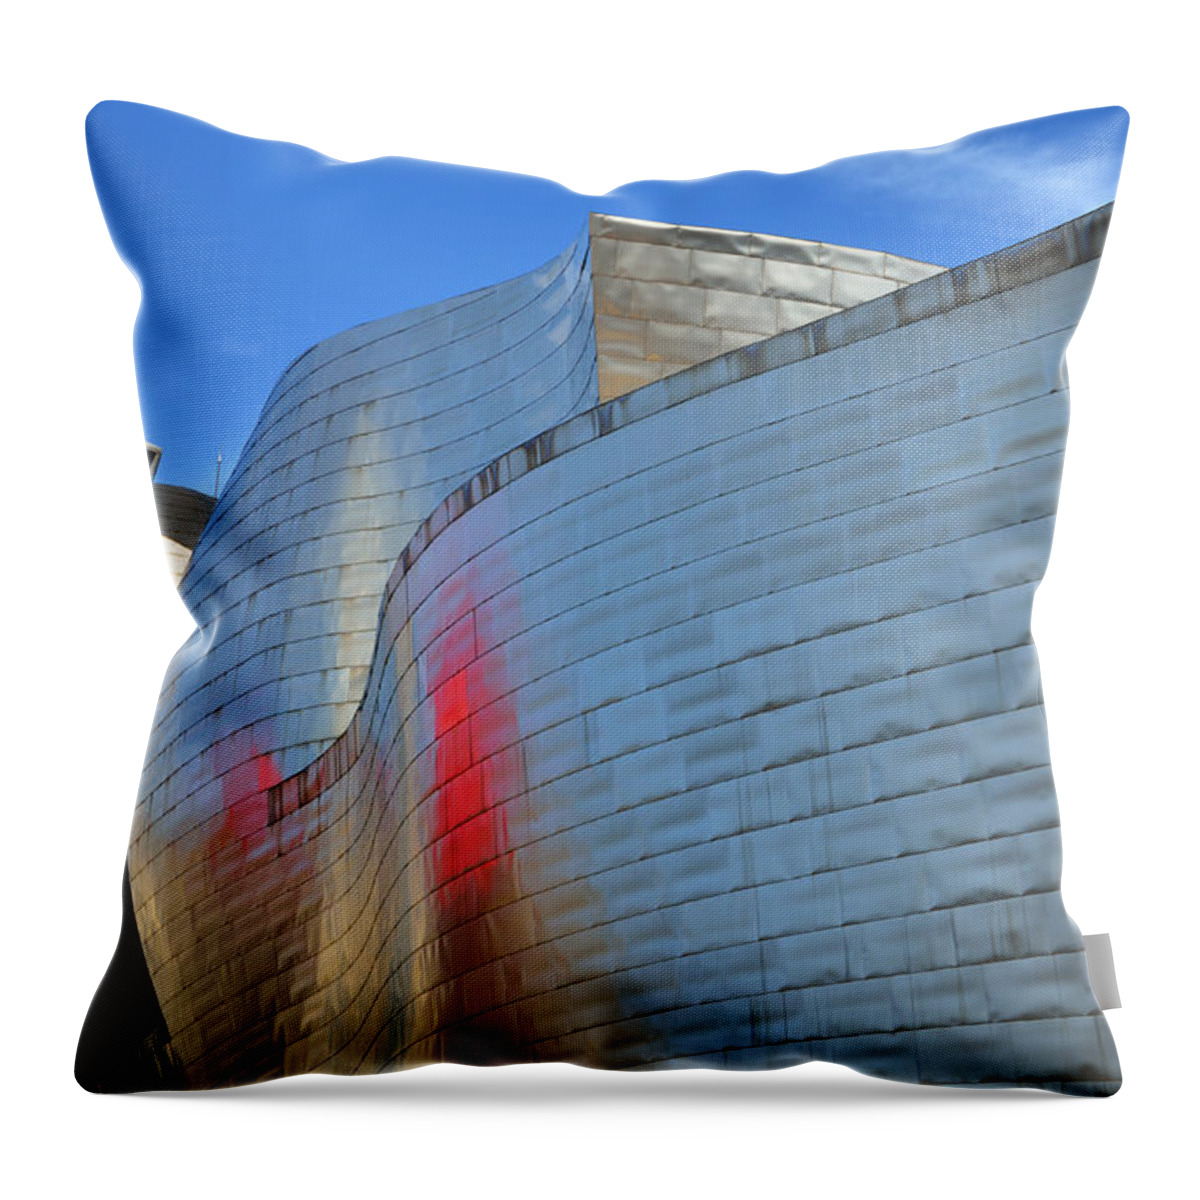 Guggenheim Throw Pillow featuring the photograph Guggenheim Museum Bilbao - 3 by RicardMN Photography